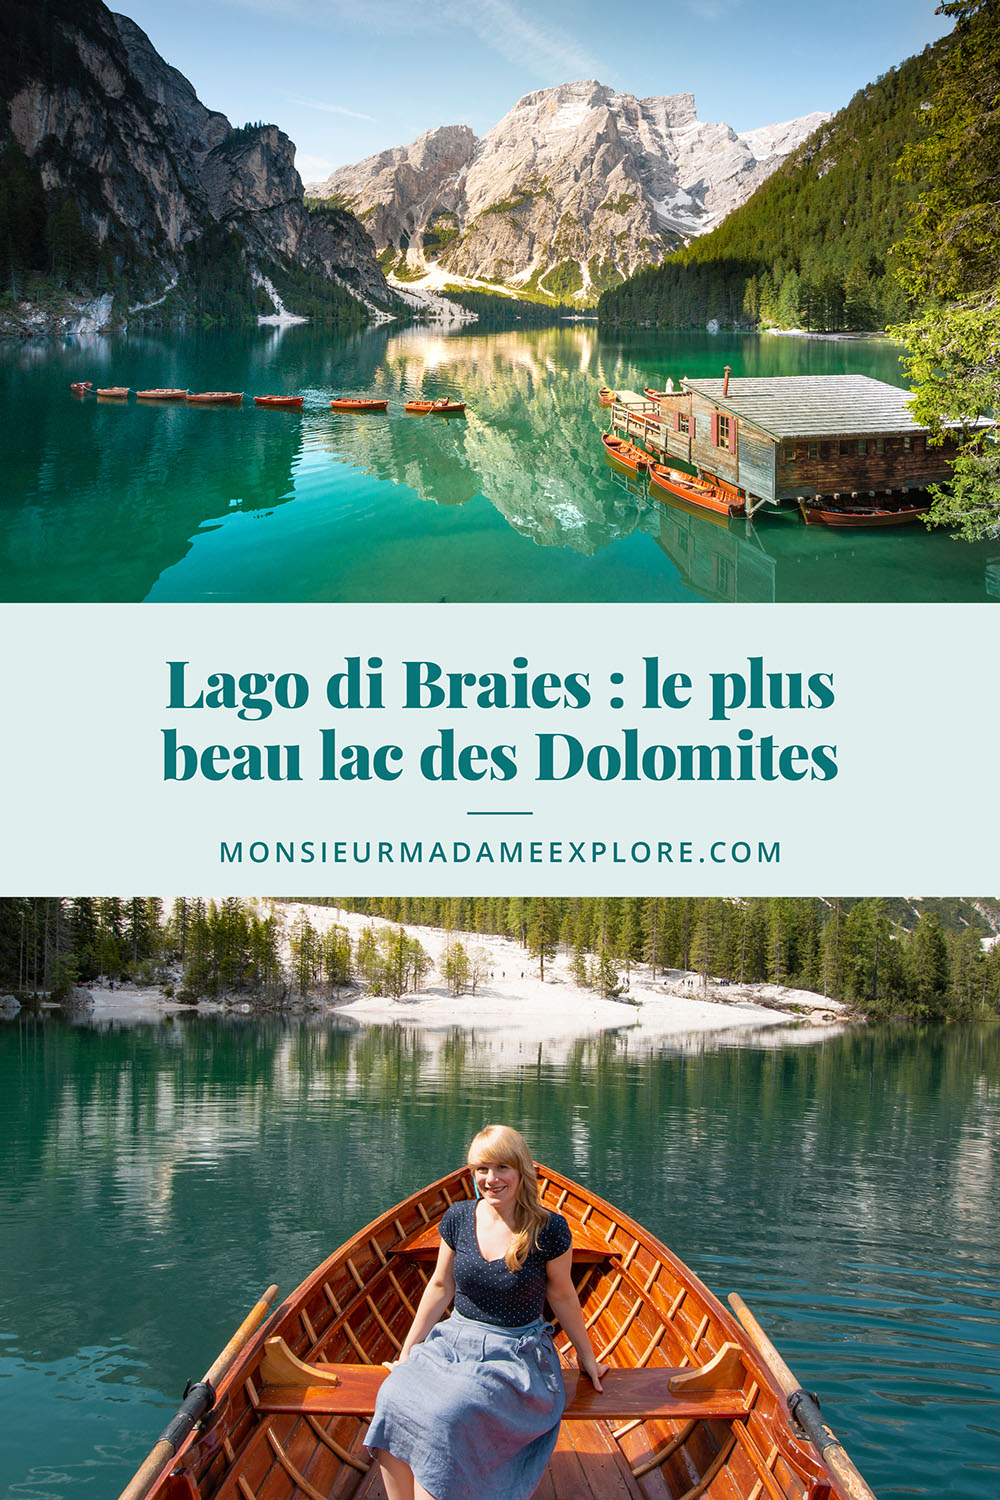 Lago di Braies : le plus beau (et le plus populaire) des lacs des Dolomites, Monsieur+Madame Explore, Blogue de voyage, Italie / Lago di Braies, the most beautiful lake in the Dolomites, Italy